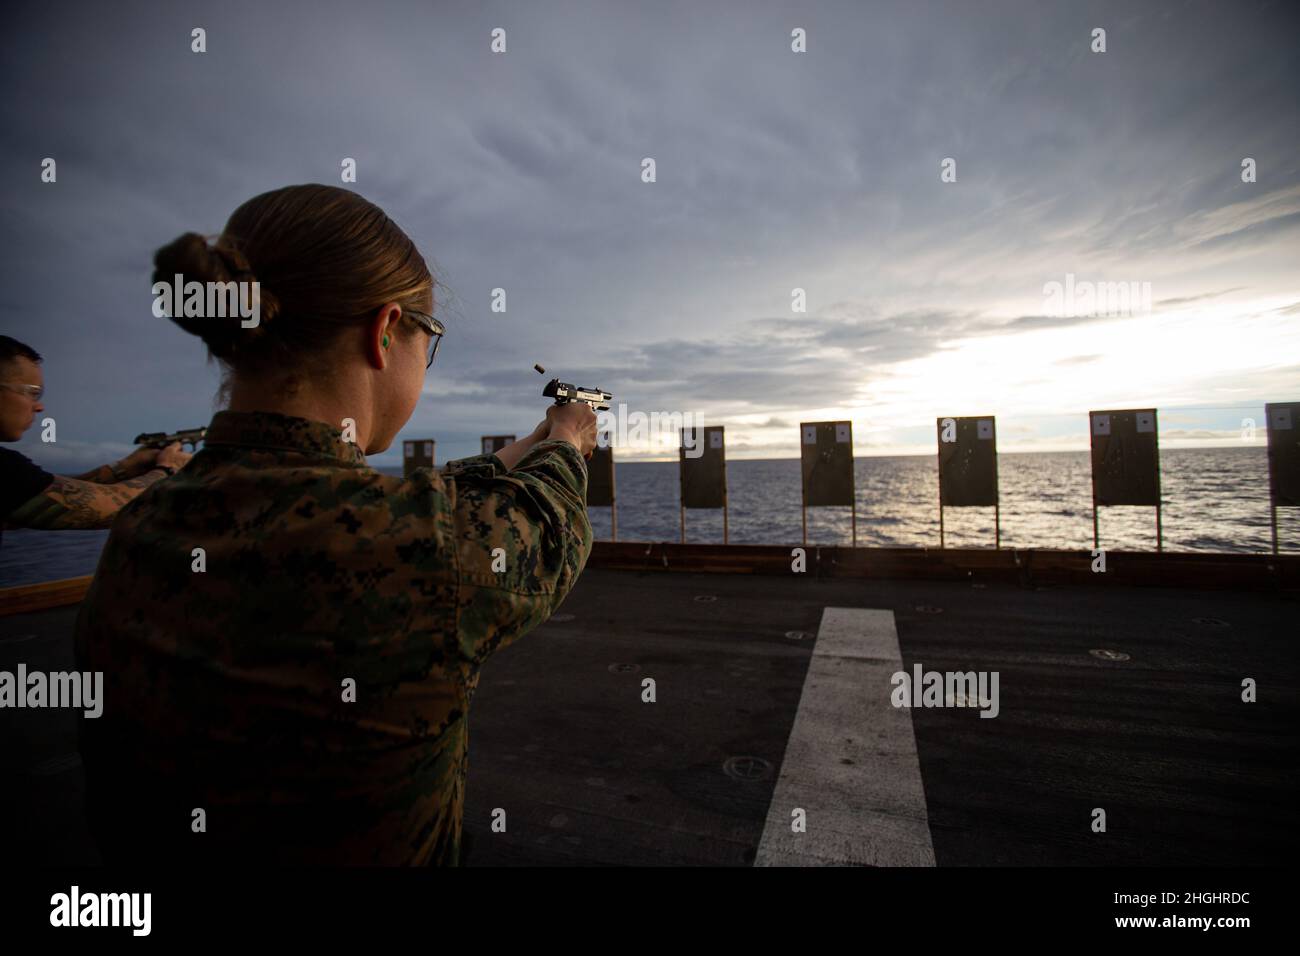 U.S. Marine Corps 1. LT. Elizabeth Schilder, eine Waffen- und Taktikausbilderin, mit der 31. Marine Expeditionary Unit (MEU), wartet auf weitere Instruktionen während eines Schießwettbewerbs an Bord des amphibischen Angriffsschiffs USS America (LHA 6) in der Salomonsee, 7. August 2021. Die Veranstaltung bestand aus Marineinfanteristen und Matrosen, die beim Schießen einer Reihe von Übungen mit dem Ziel, die höchste Gesamtpunktzahl zu erreichen, gegeneinander antreten. Die 31. MEU wird an Bord von Schiffen der America Expeditionary Strike Group im 7. Flottenbereich eingesetzt, um die Interoperabilität mit Verbündeten und Partnern zu verbessern und als ready response zu dienen Stockfoto